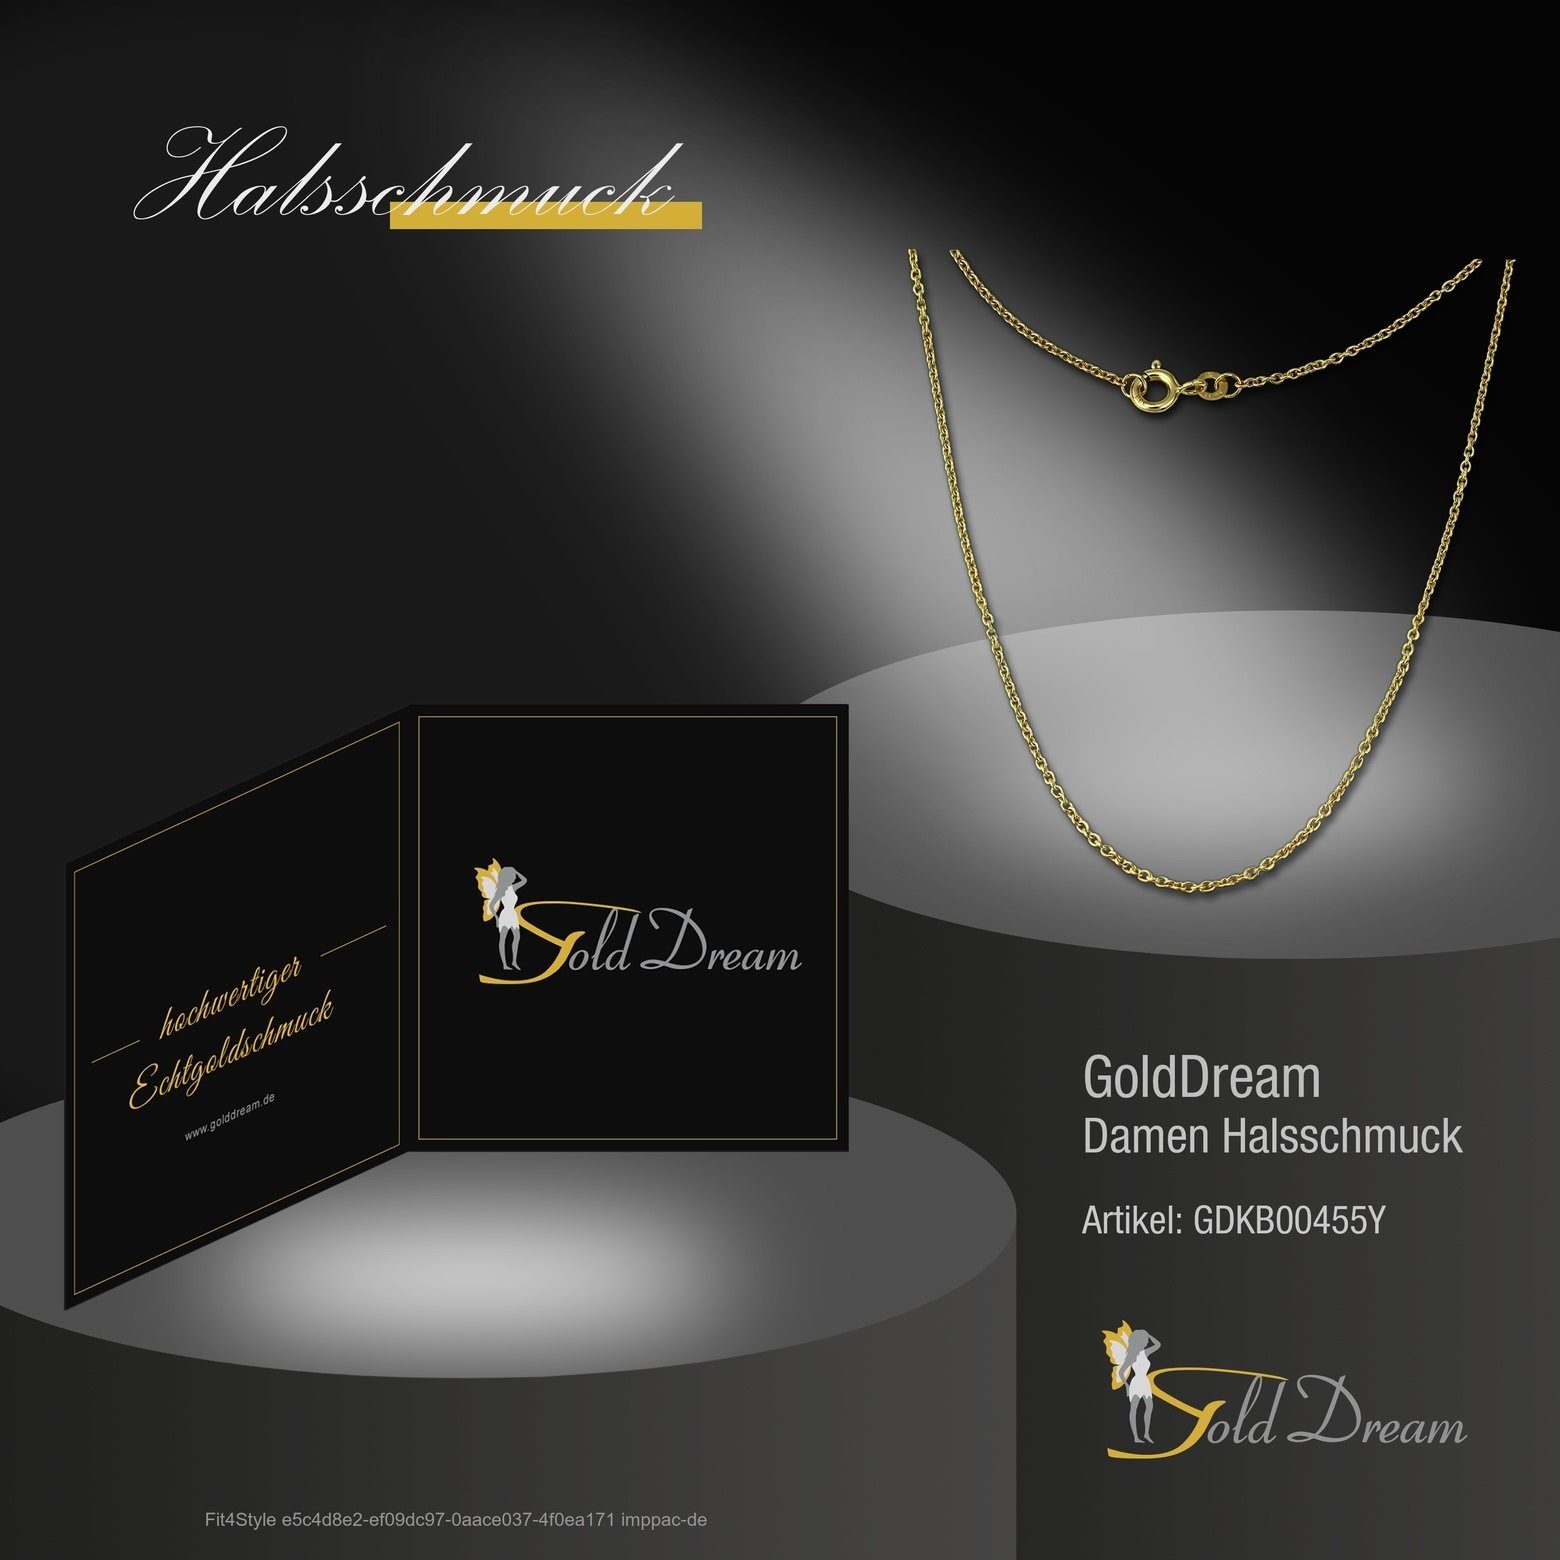 GoldDream Goldkette GoldDream Damen Colliers 333 8 - Karat, Damen (Collier), 55cm goldfarb Farbe: Gelbgold 55cm, Colliers Halskette Halskette